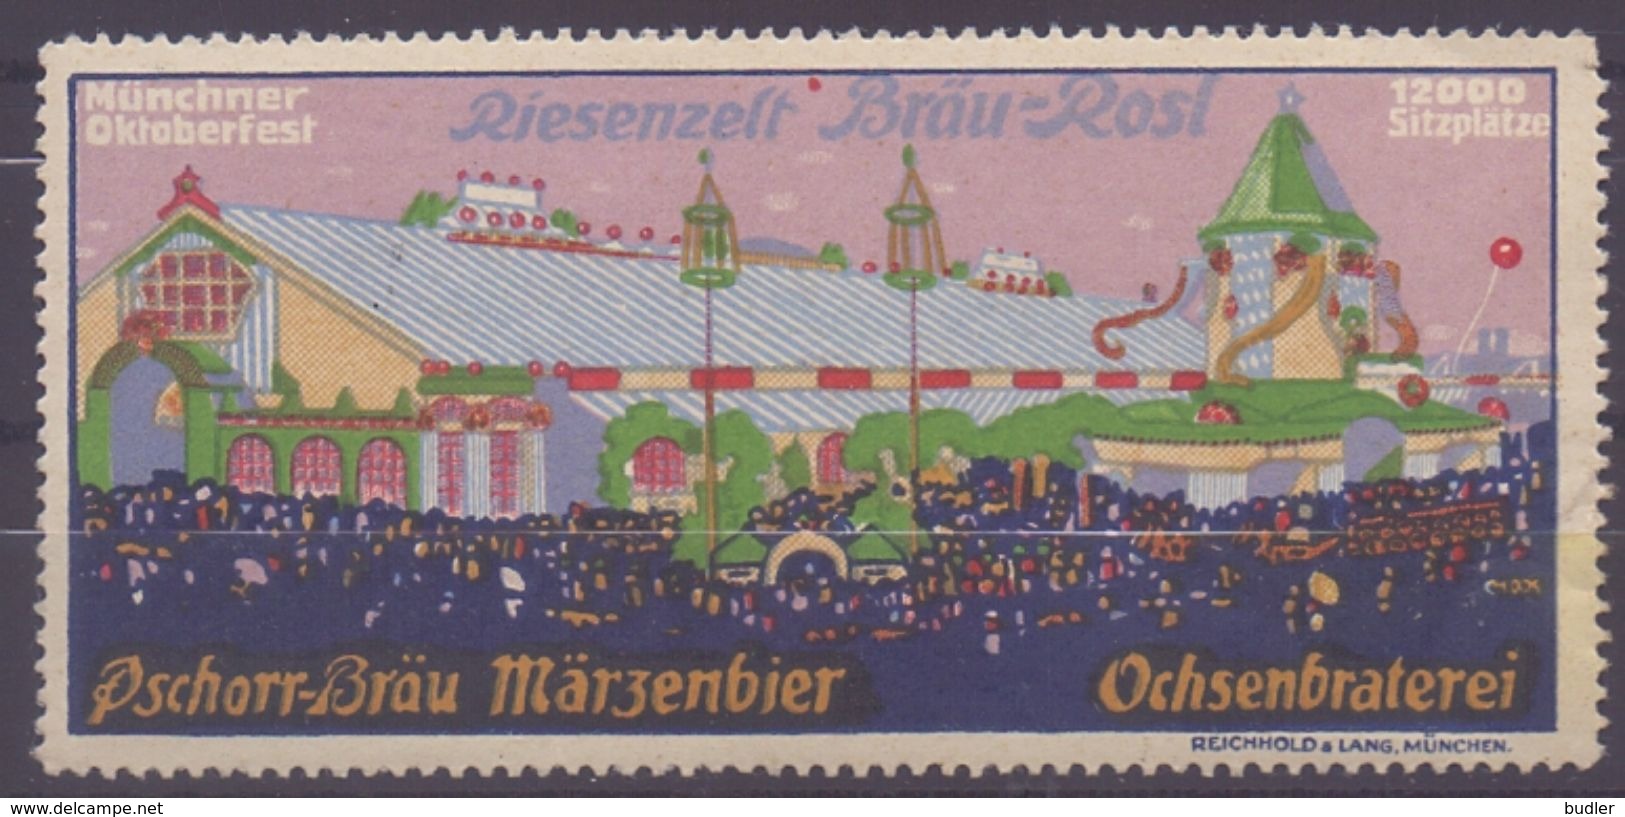 DEUTSCHLAND/GERMANY : Vignette/Cinderella - With Glue: §@§ Münchener Oktoberfest : Riesenzelt Bräu-Rosl §@§ : BIÈRE,BEER - Biere